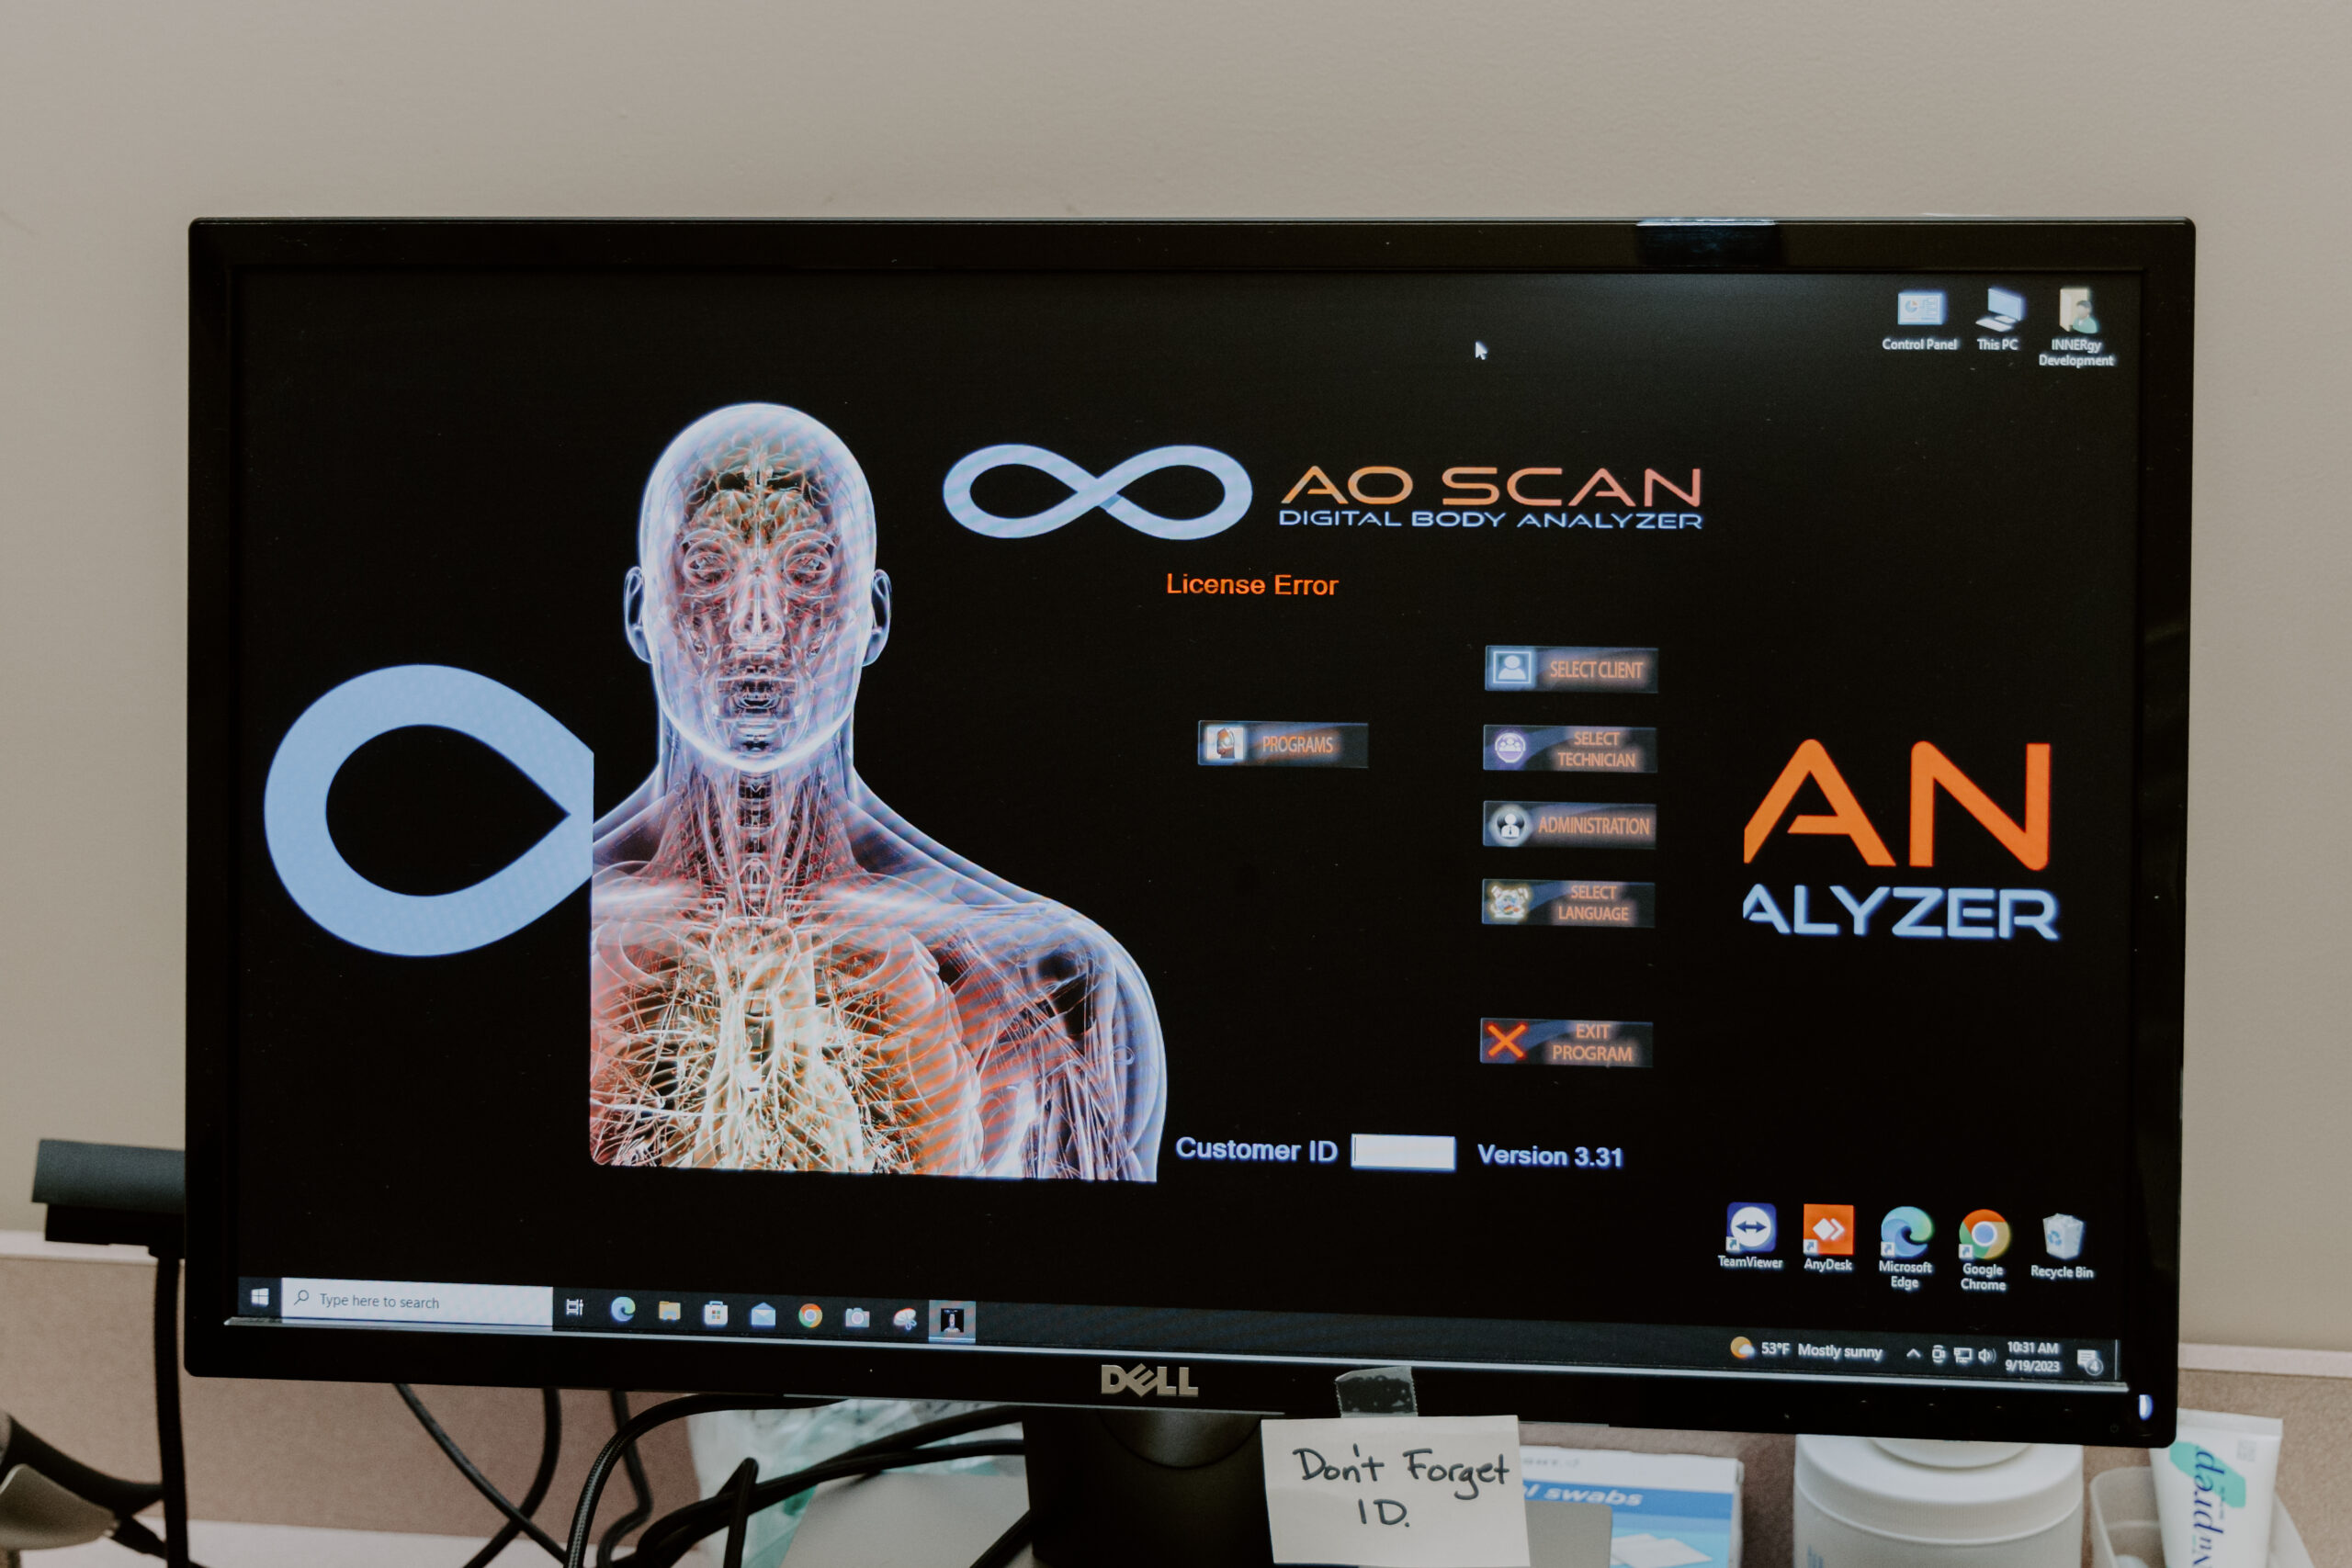 AO Scan Body Analyzer program